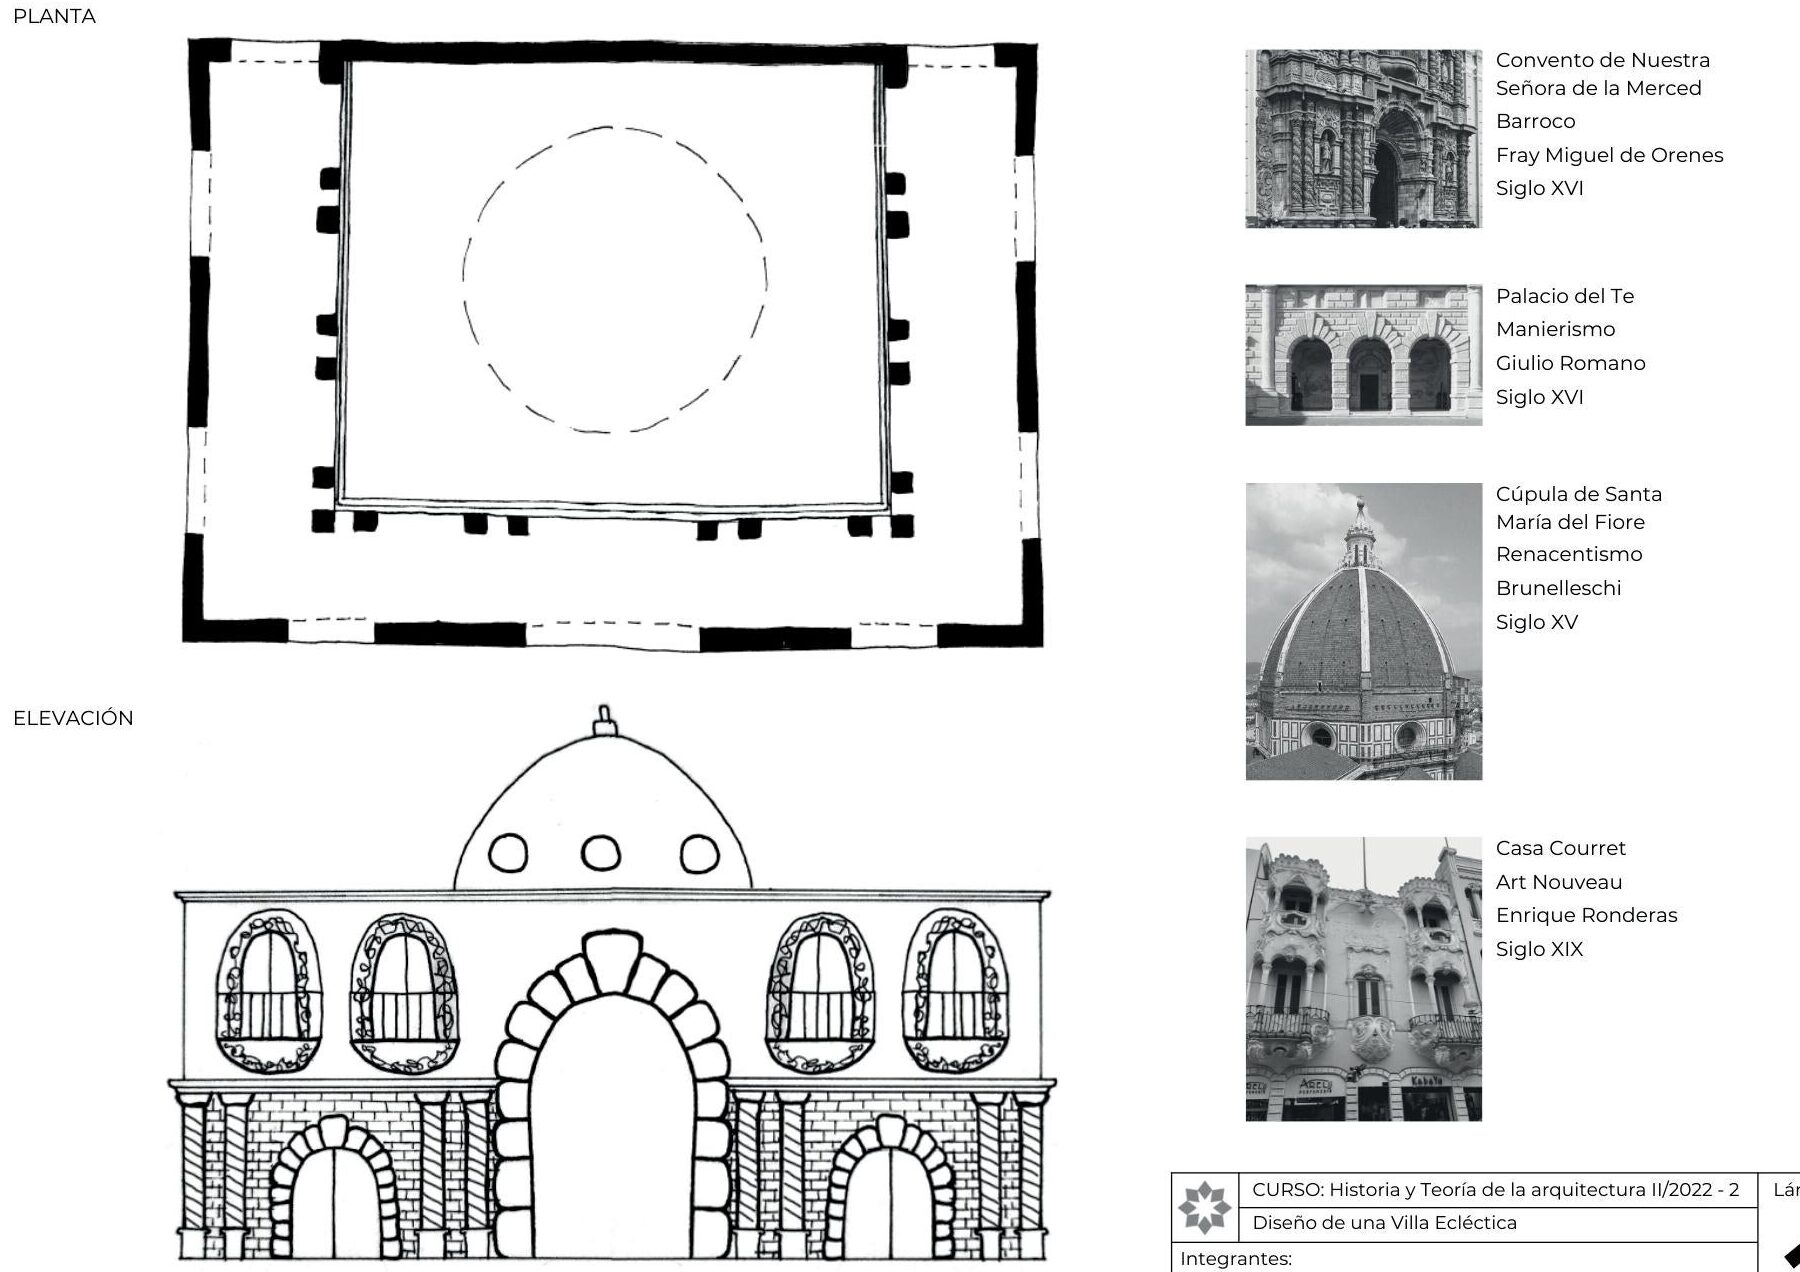 Estructura estabilizada por una clave maestra: Importancia en la arquitectura histórica.